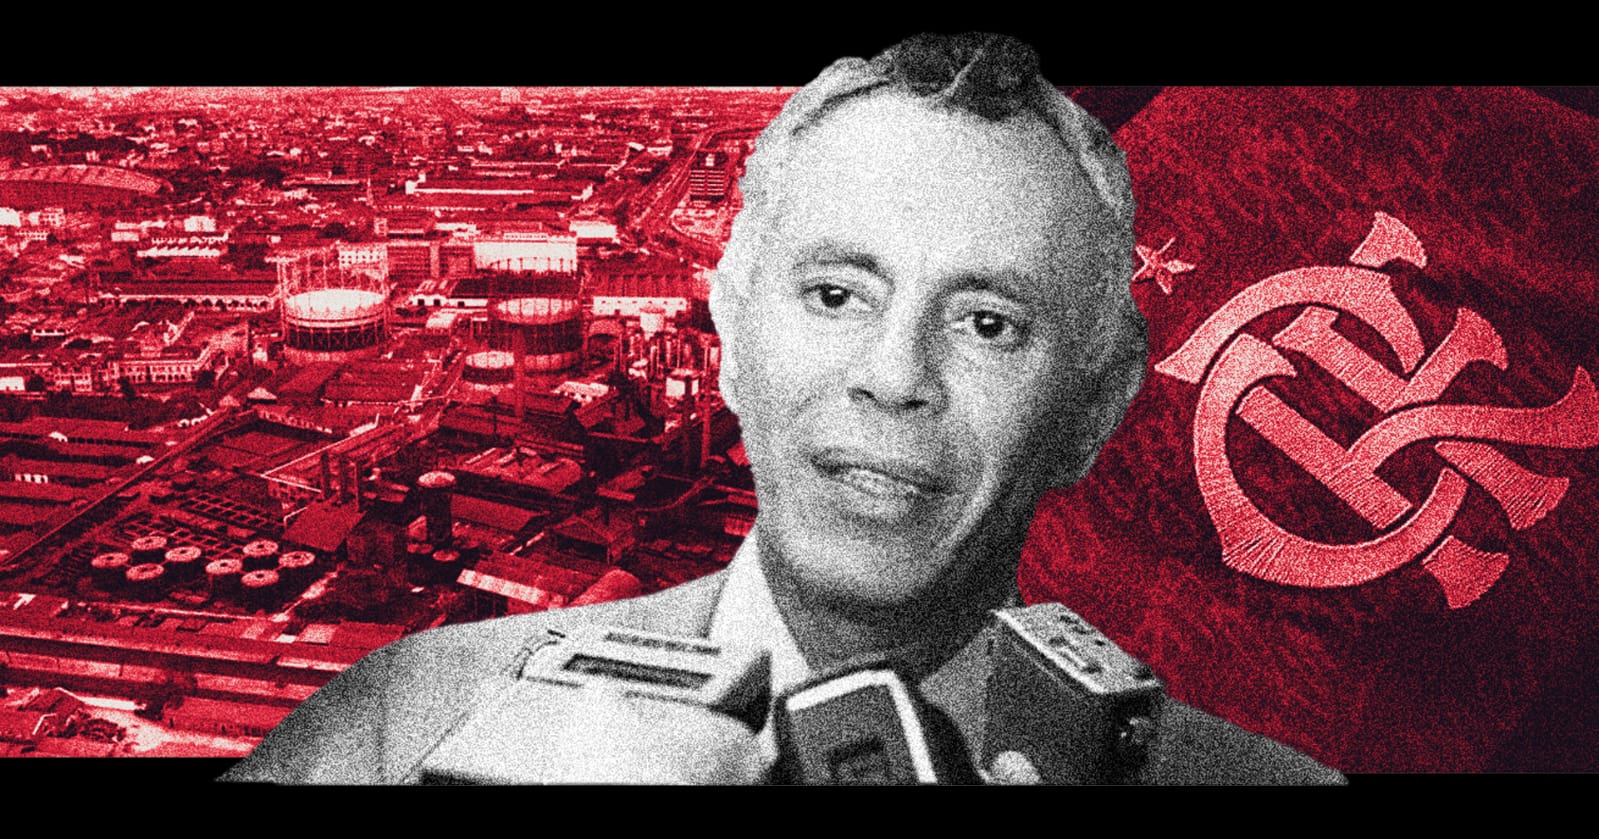 O futuro estádio do Flamengo e a ditadura (por Chico Alencar)